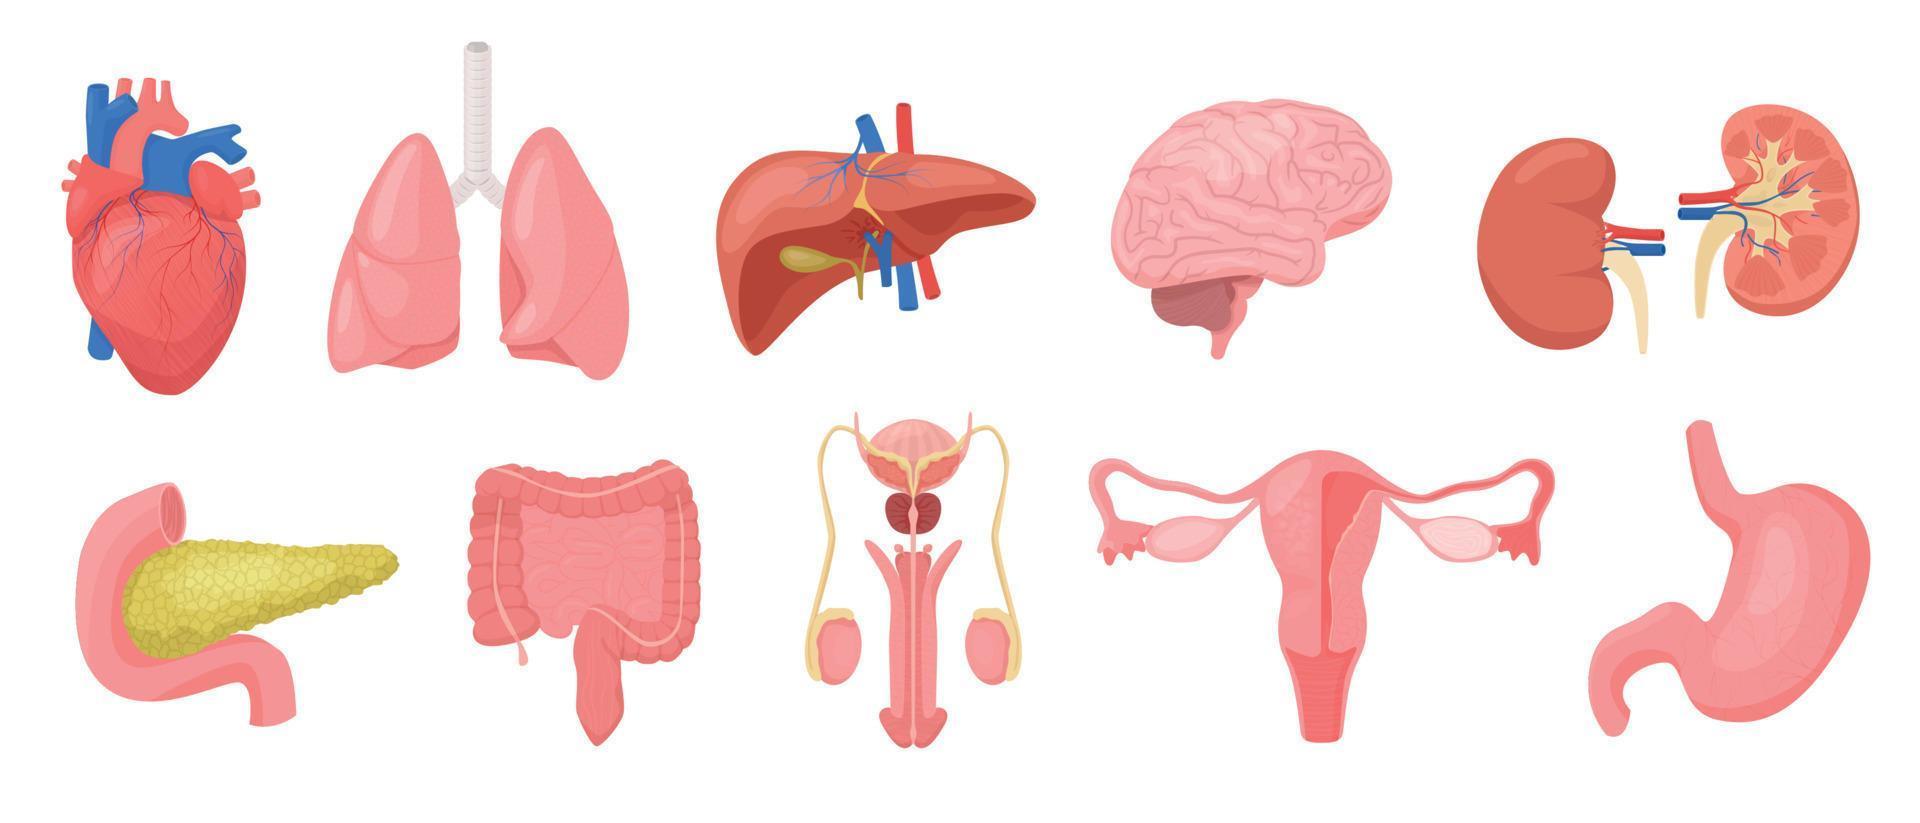 Internal Human Organs Set vector